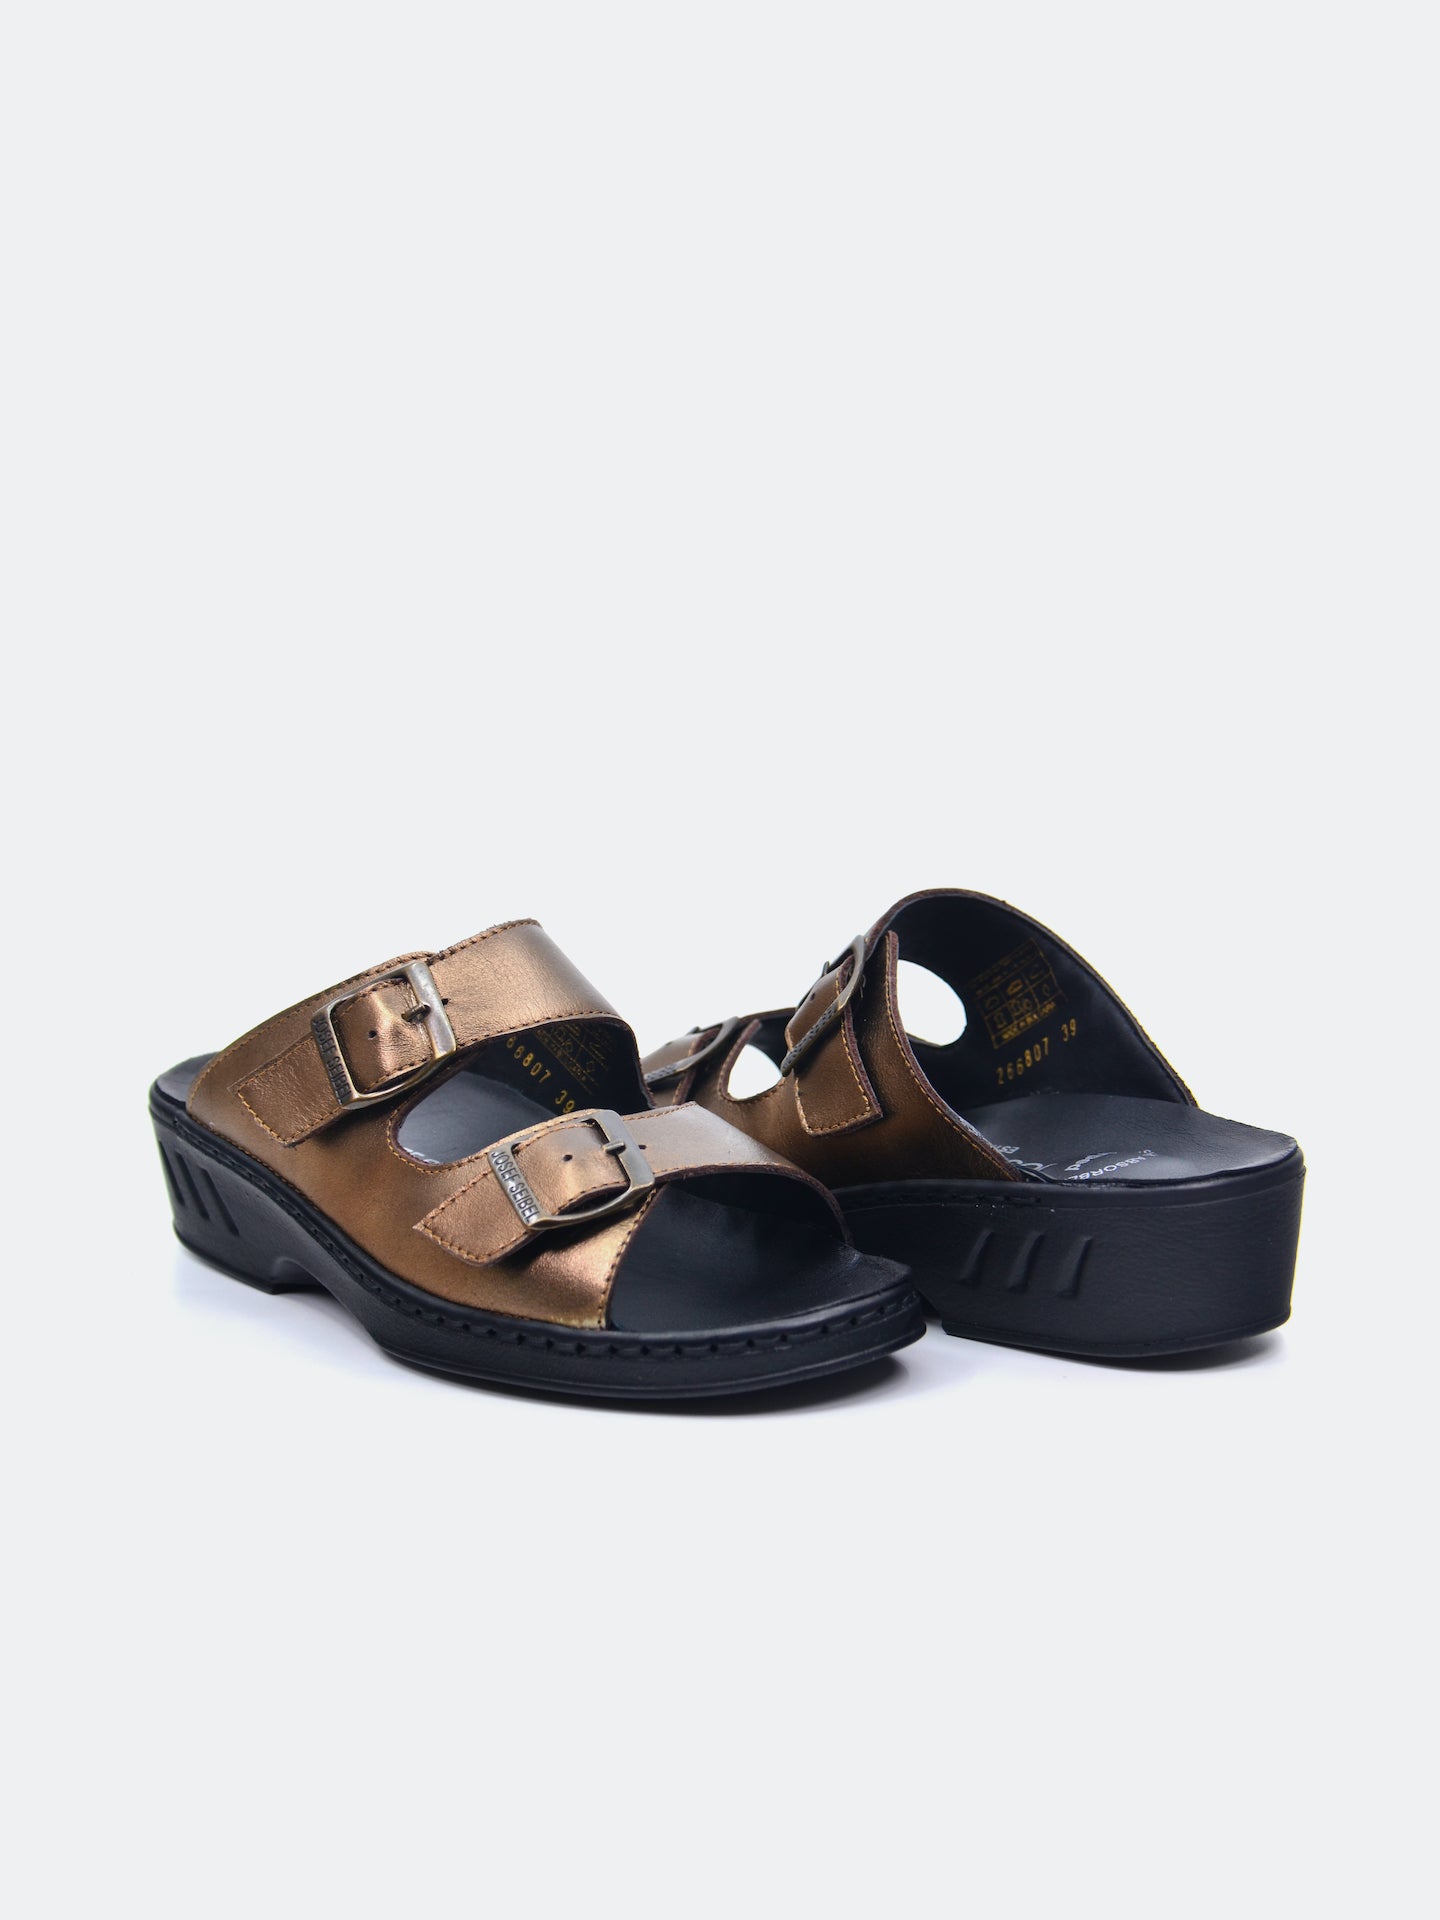 Josef Seibel Women's Flat Sandals #color_Brown